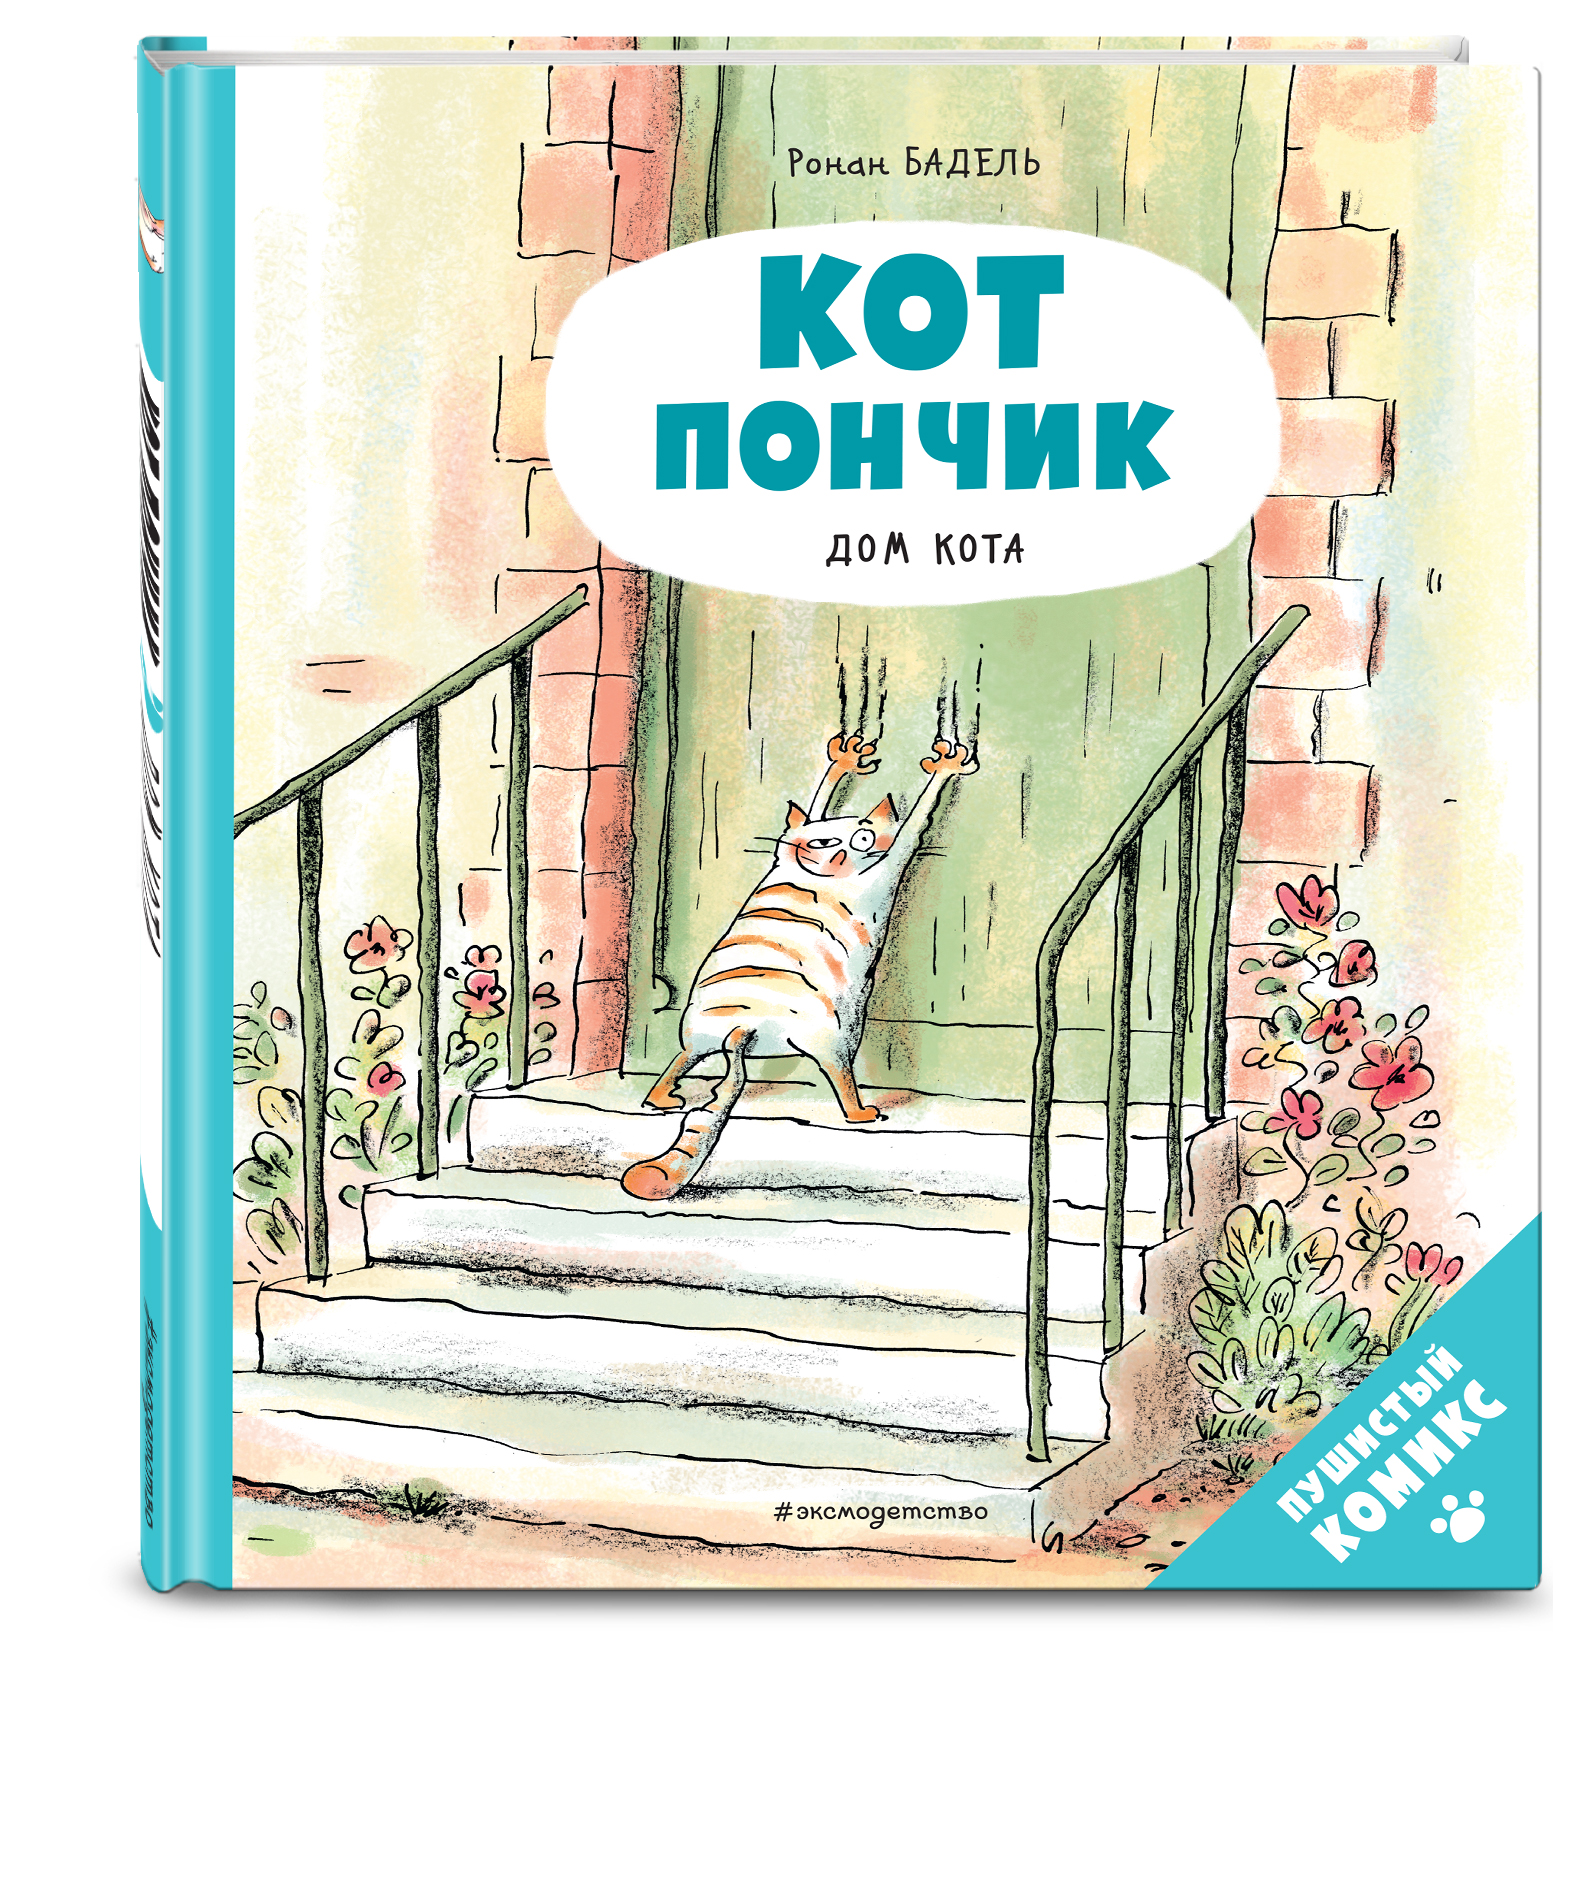 

Комикс Кот Пончик: Дом кота